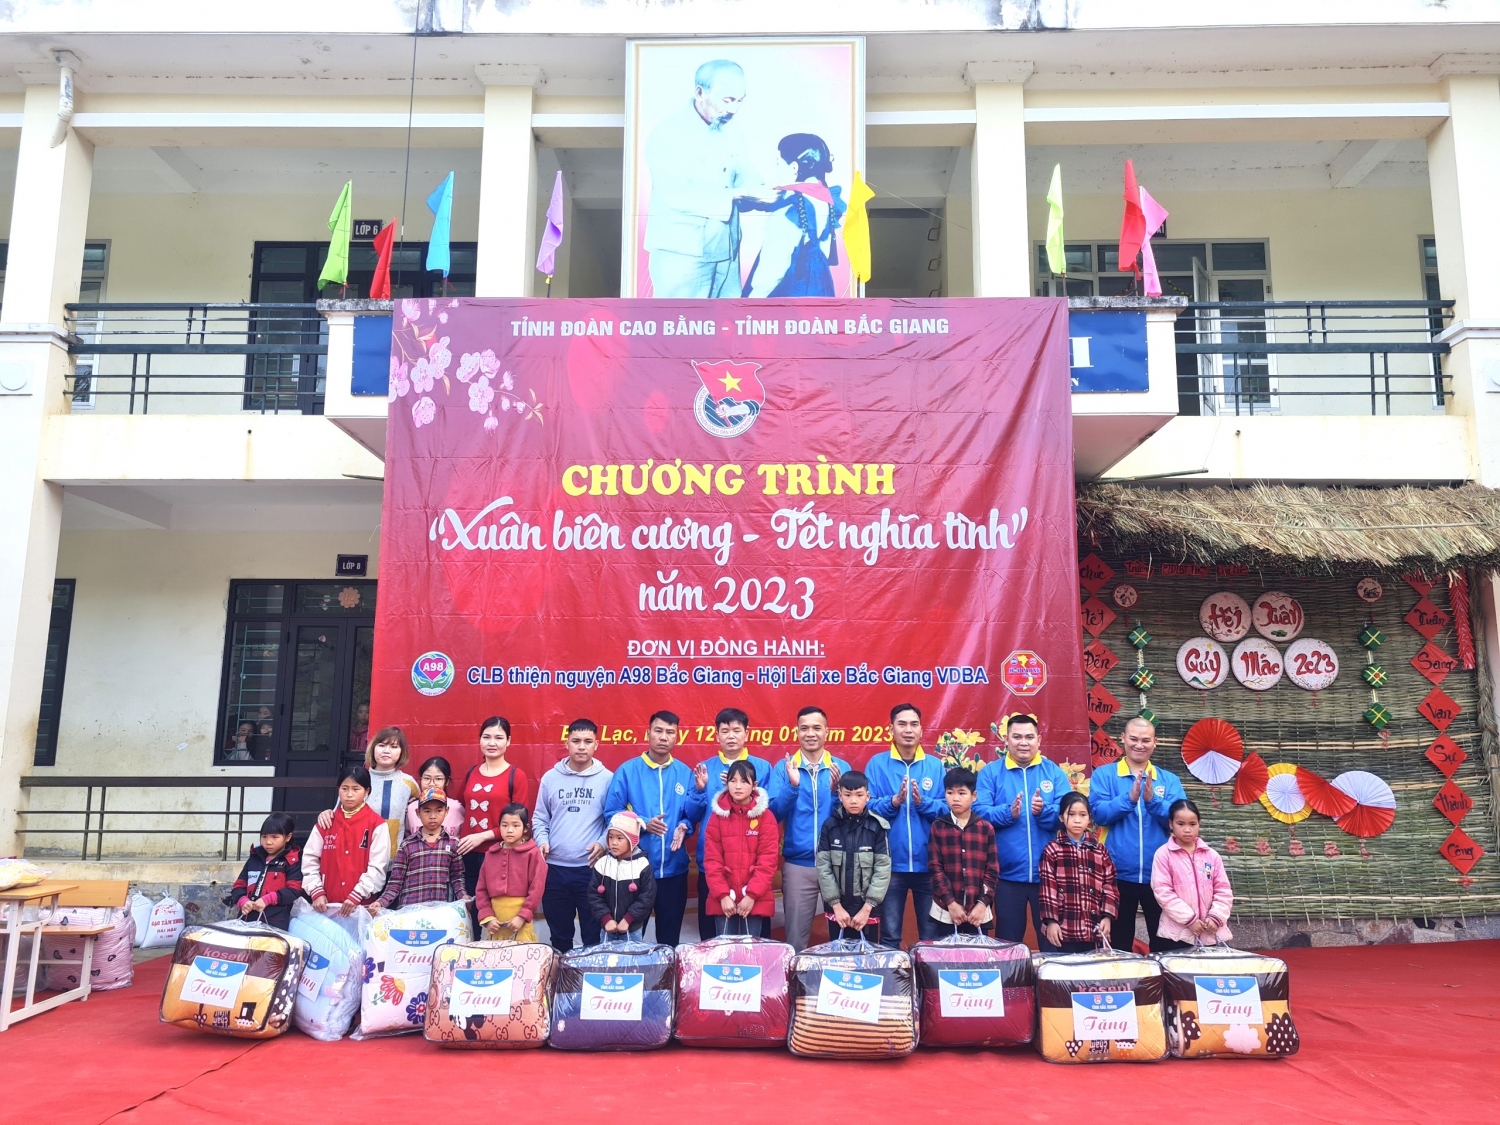 Câu lạc bộ thiện nguyện A98 Hội lái xe Bắc Giang vạn dặm bình an trao tặng chăn ấm cho thiếu nhi có hoàn cảnh khó khăn tại xã Kim Cúc, huyện Bảo Lạc